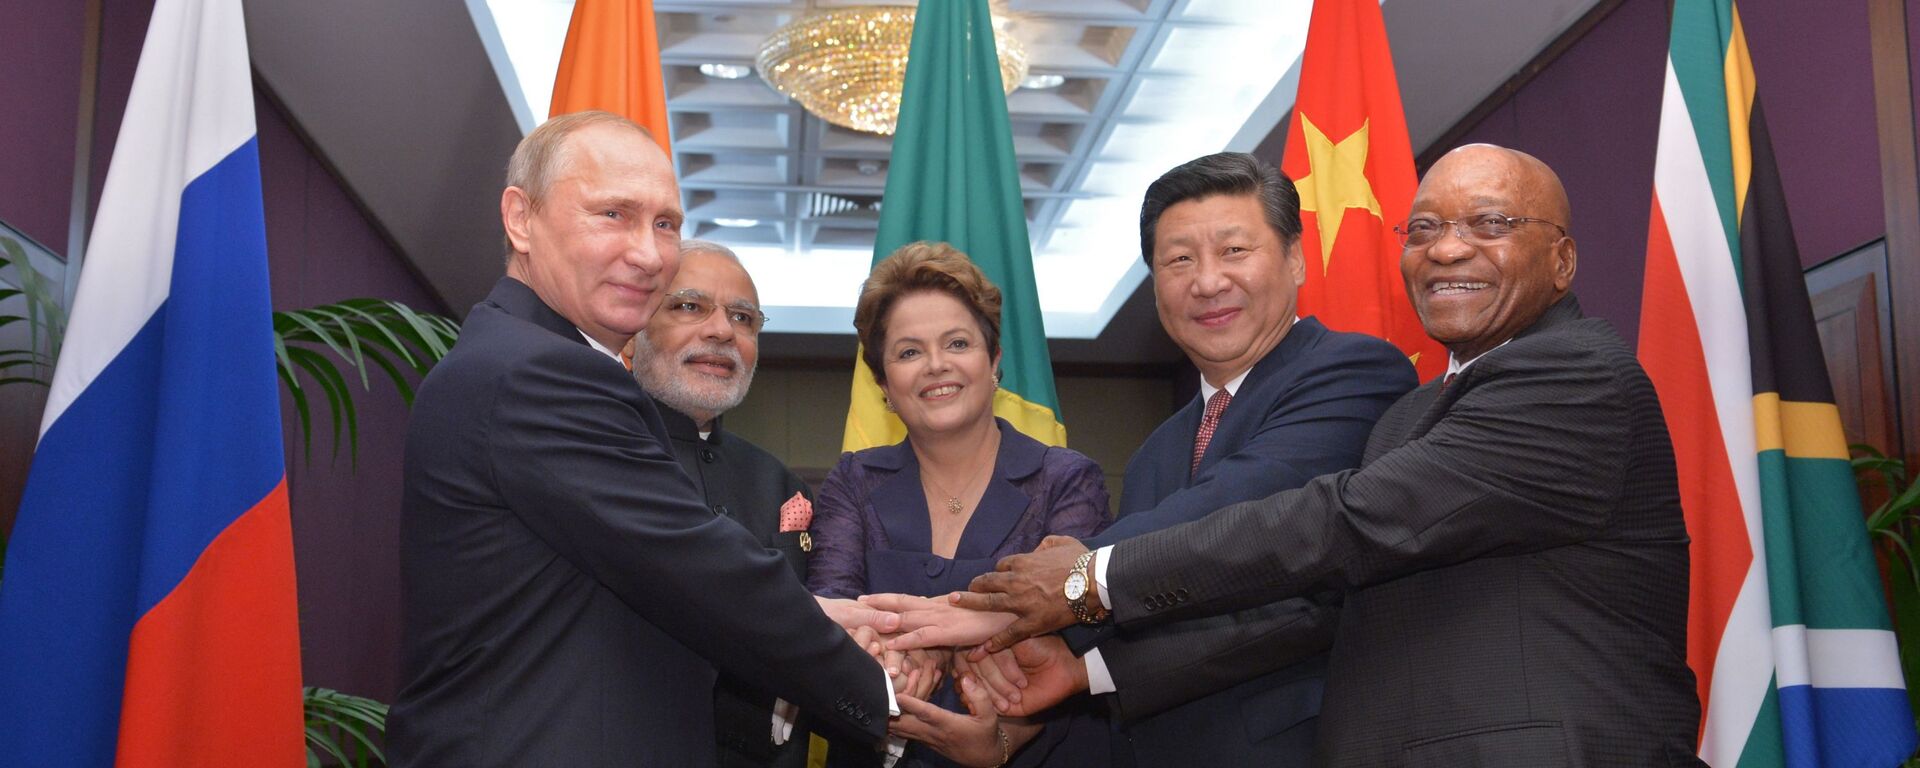 Cuộc gặp của nguyên thủ quốc gia và người đứng đầu Chính phủ các nước thành viên BRICS   - Sputnik Việt Nam, 1920, 25.08.2022